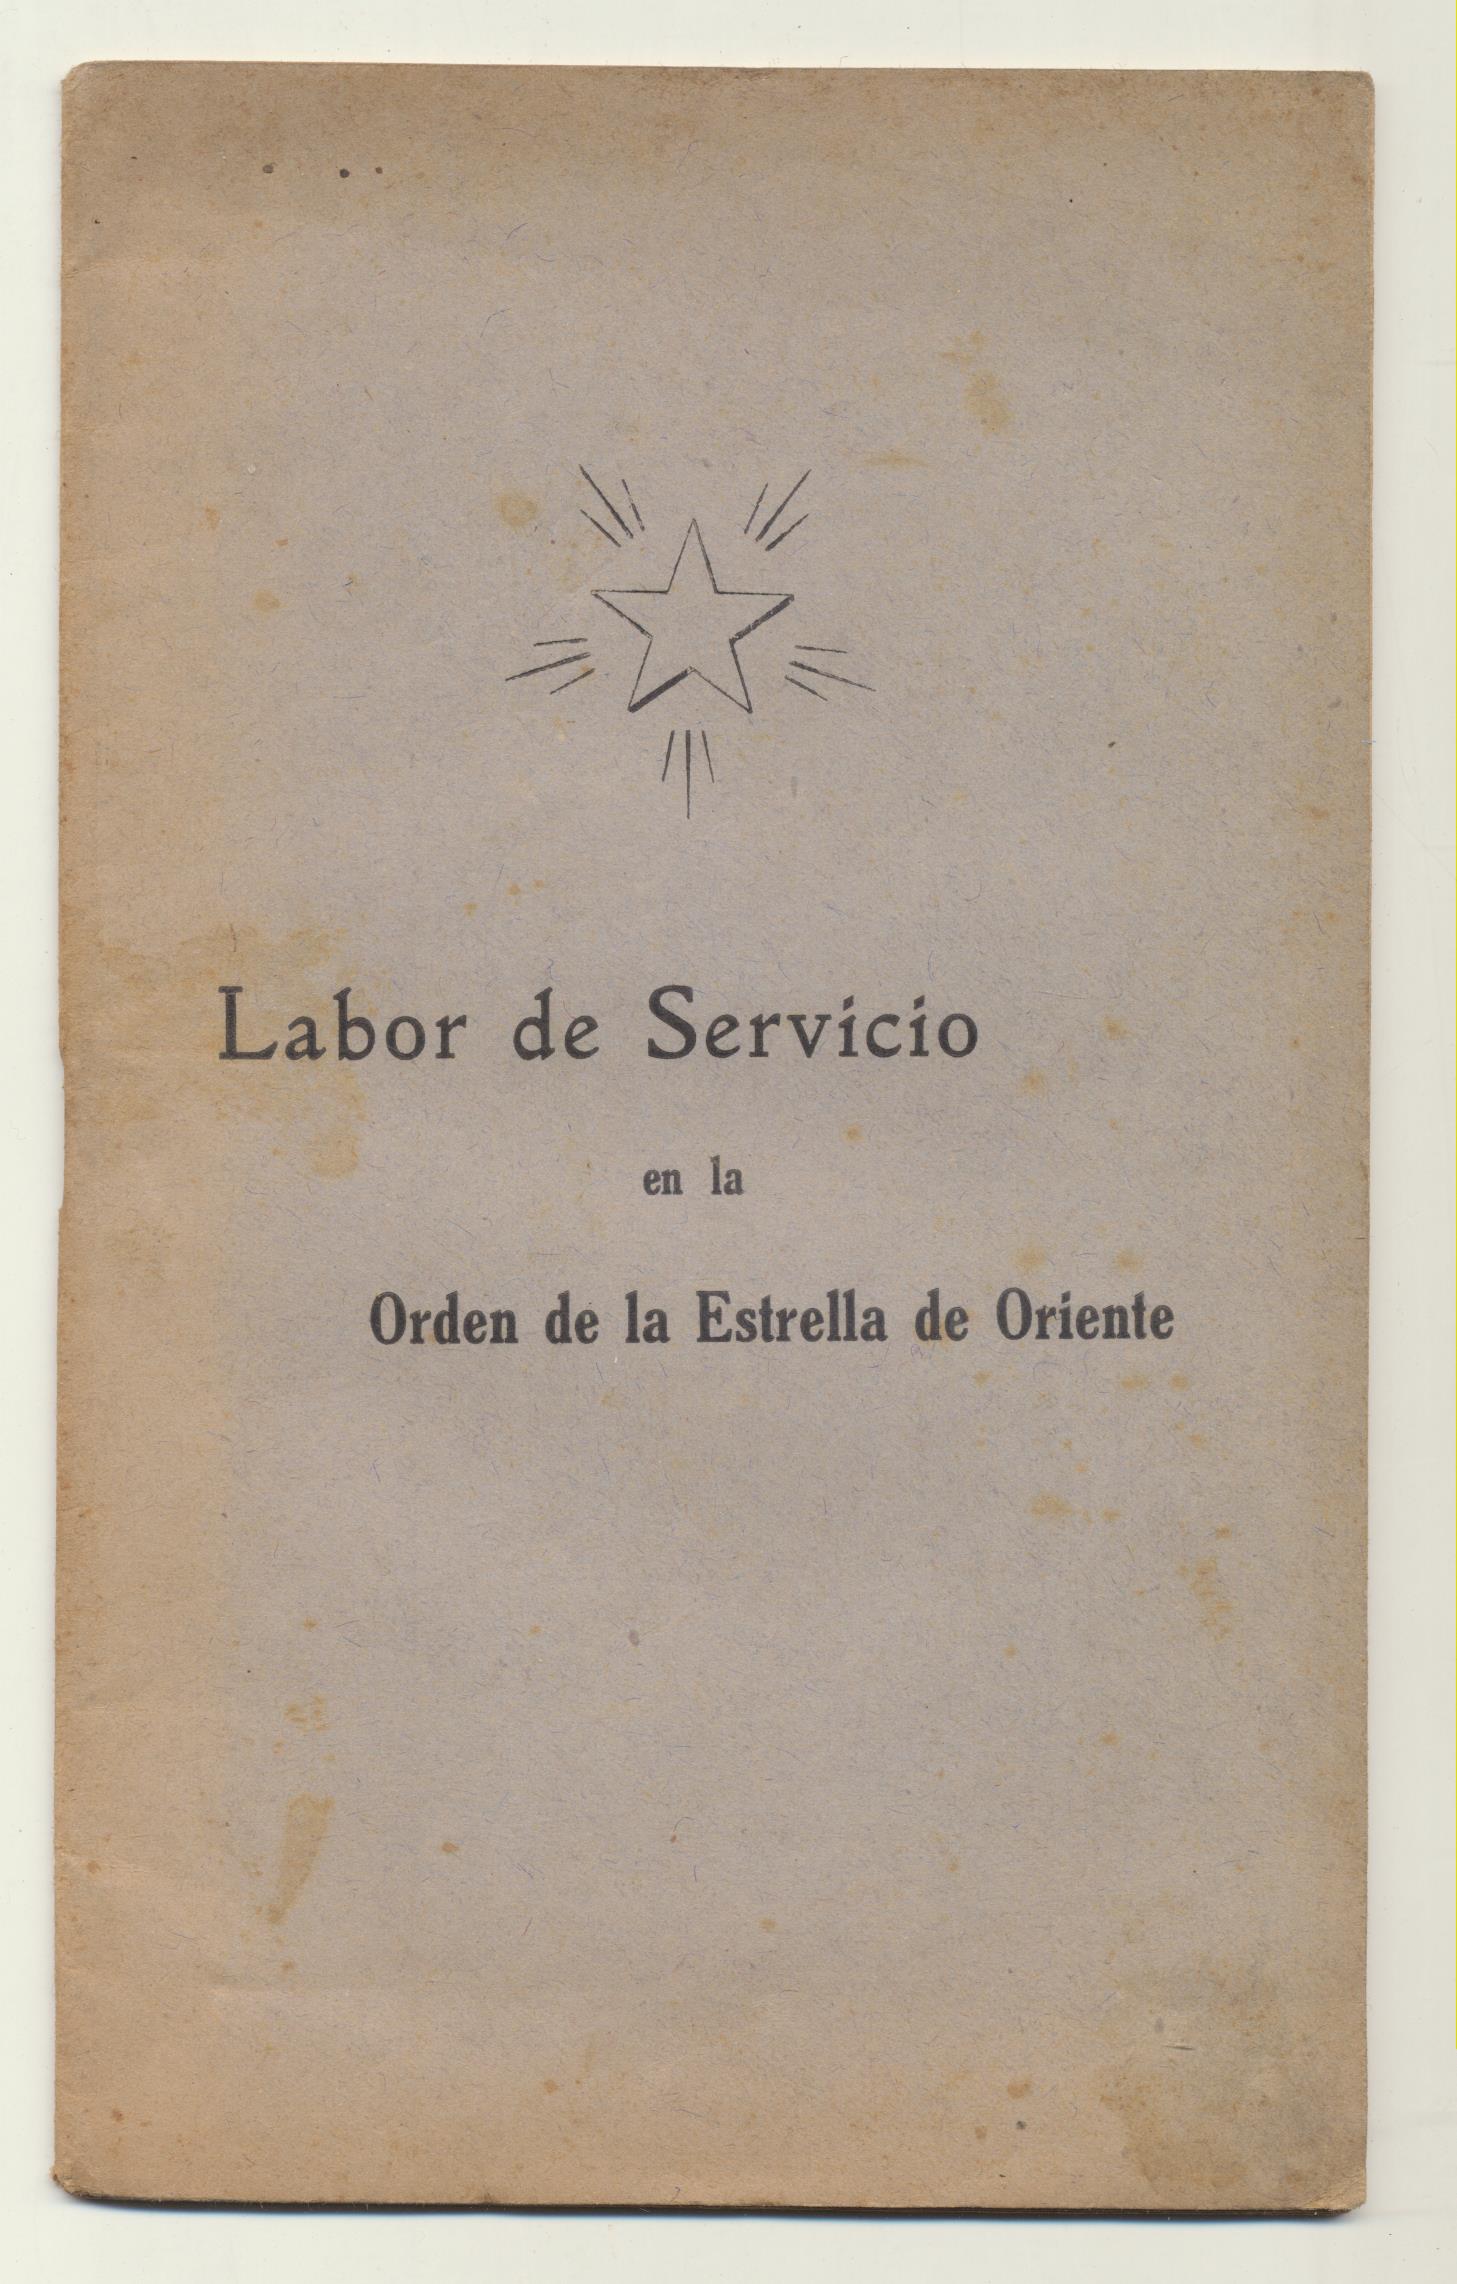 Labor de Servicio en la orden de la Estrella de Oriente. Barcelona 1913